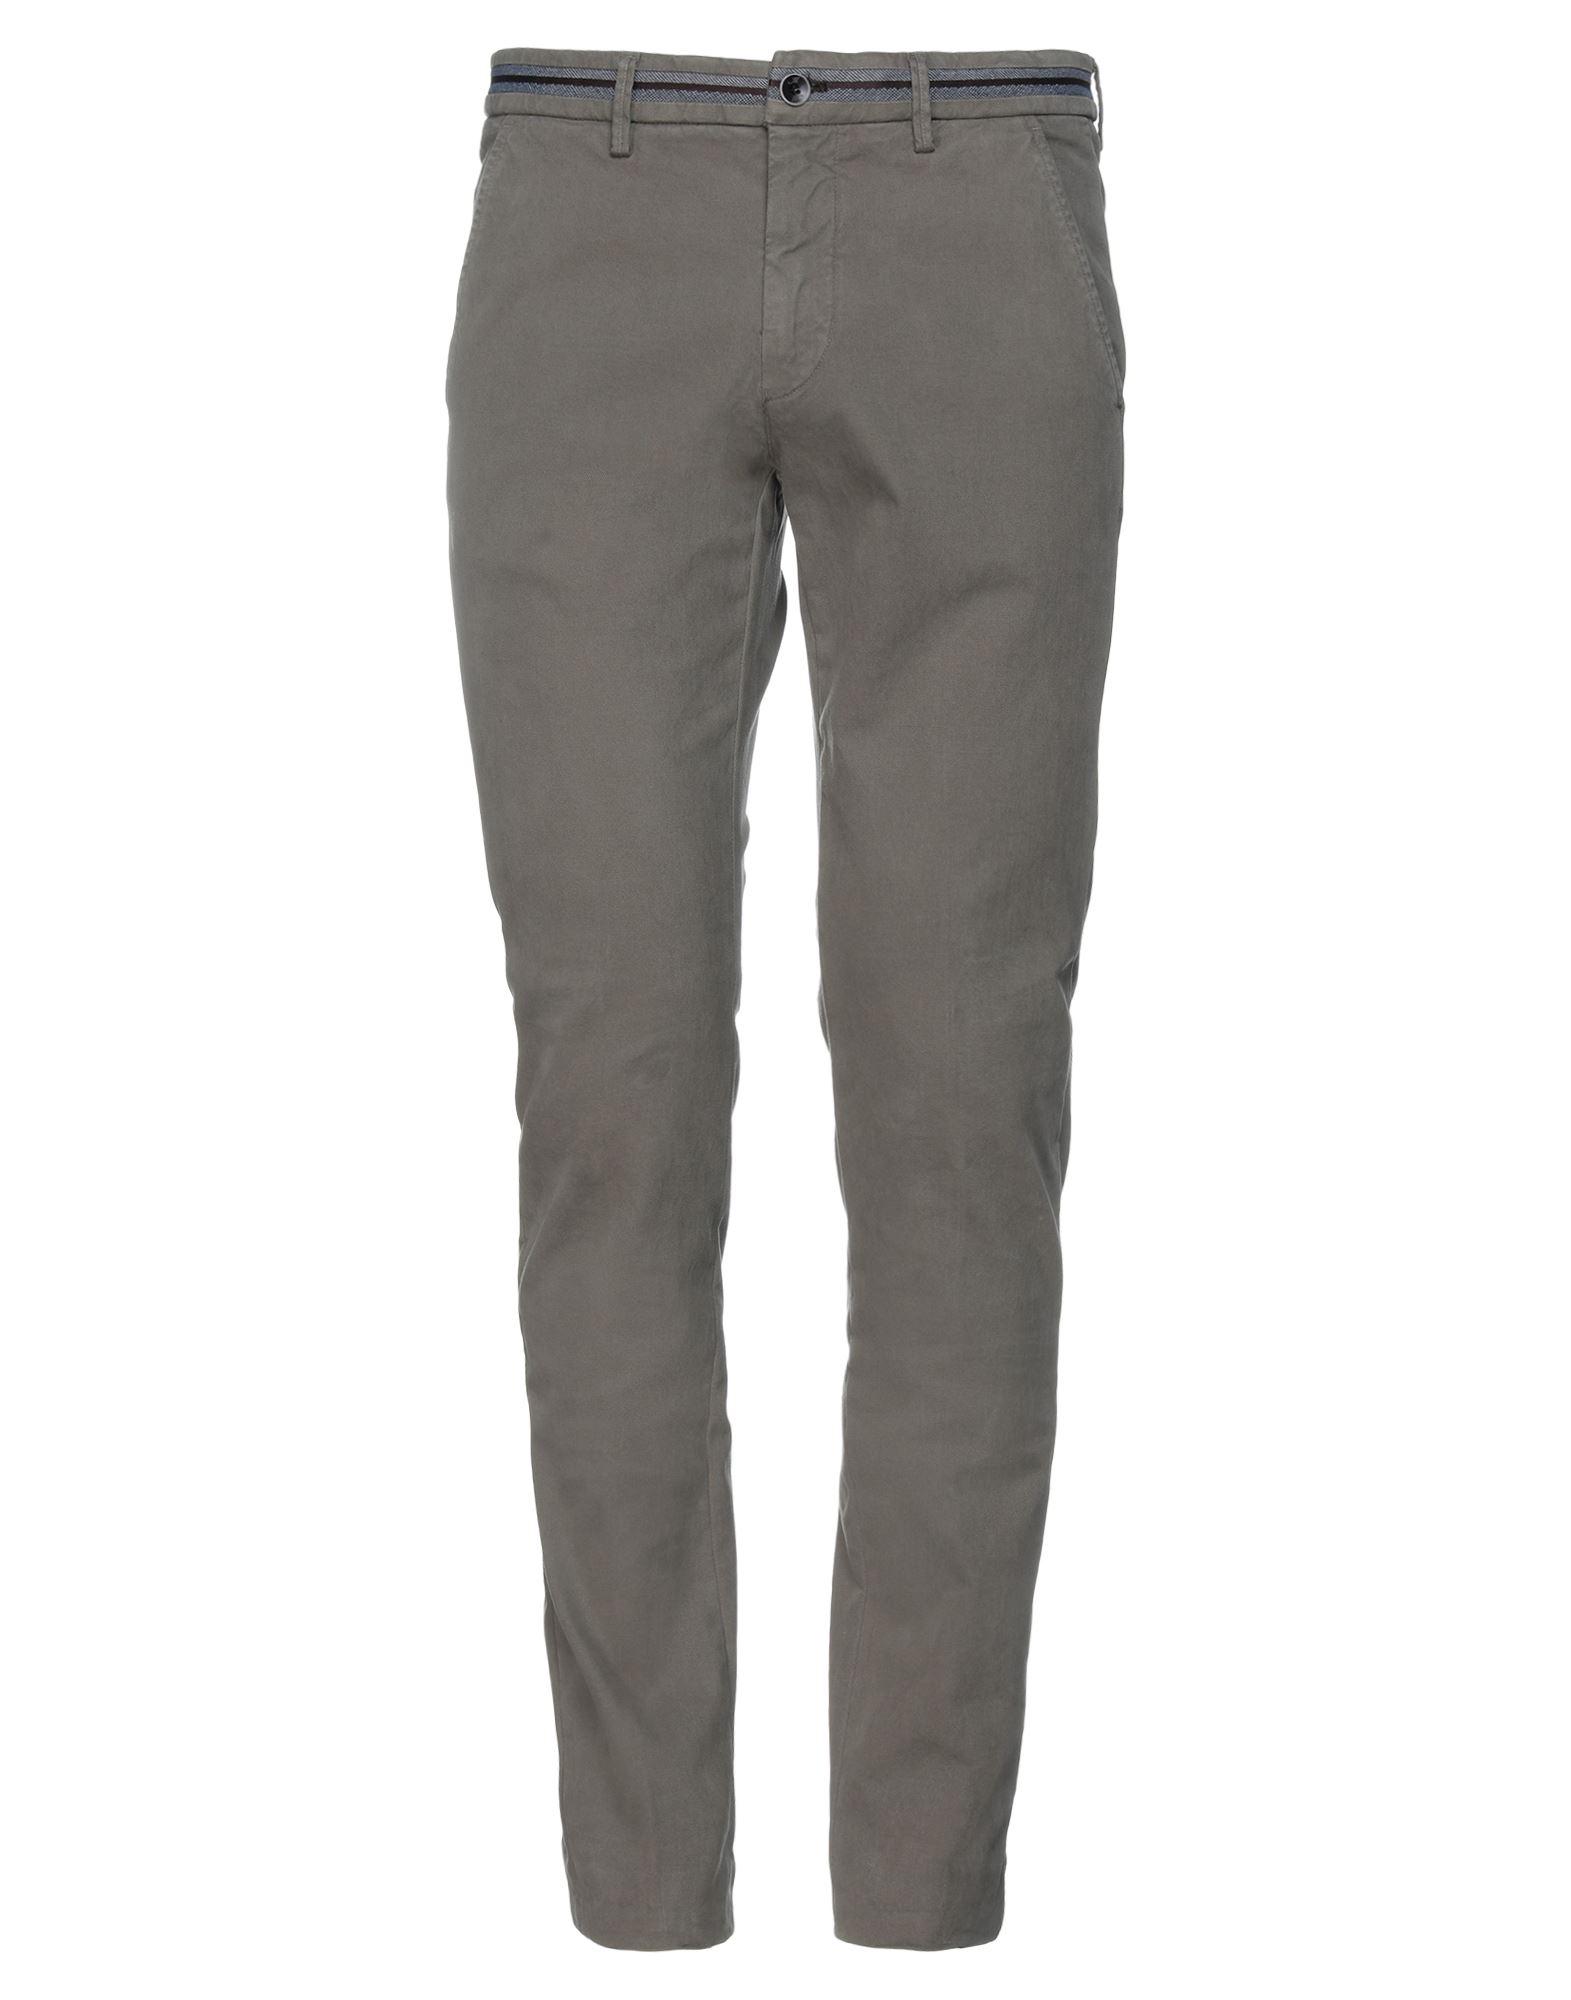 Mason's Trouser in Khaki (Gray) for Men - Lyst